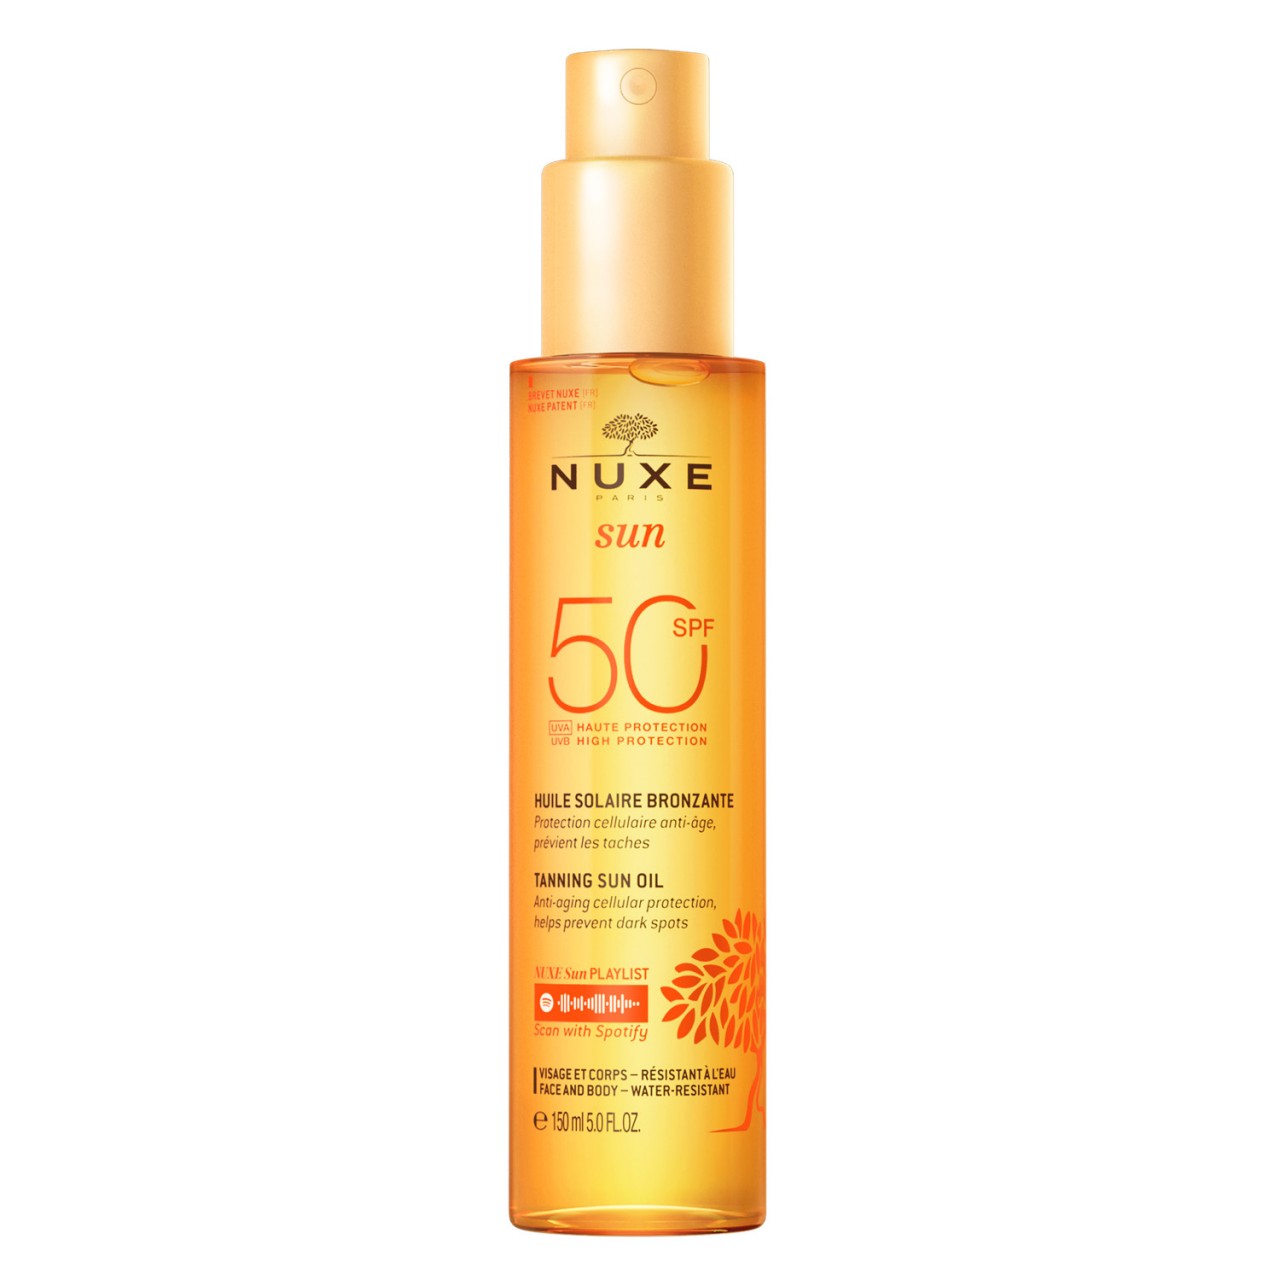 Nuxe Sun - Huile Solaire Bronzante SPF50 von Nuxe